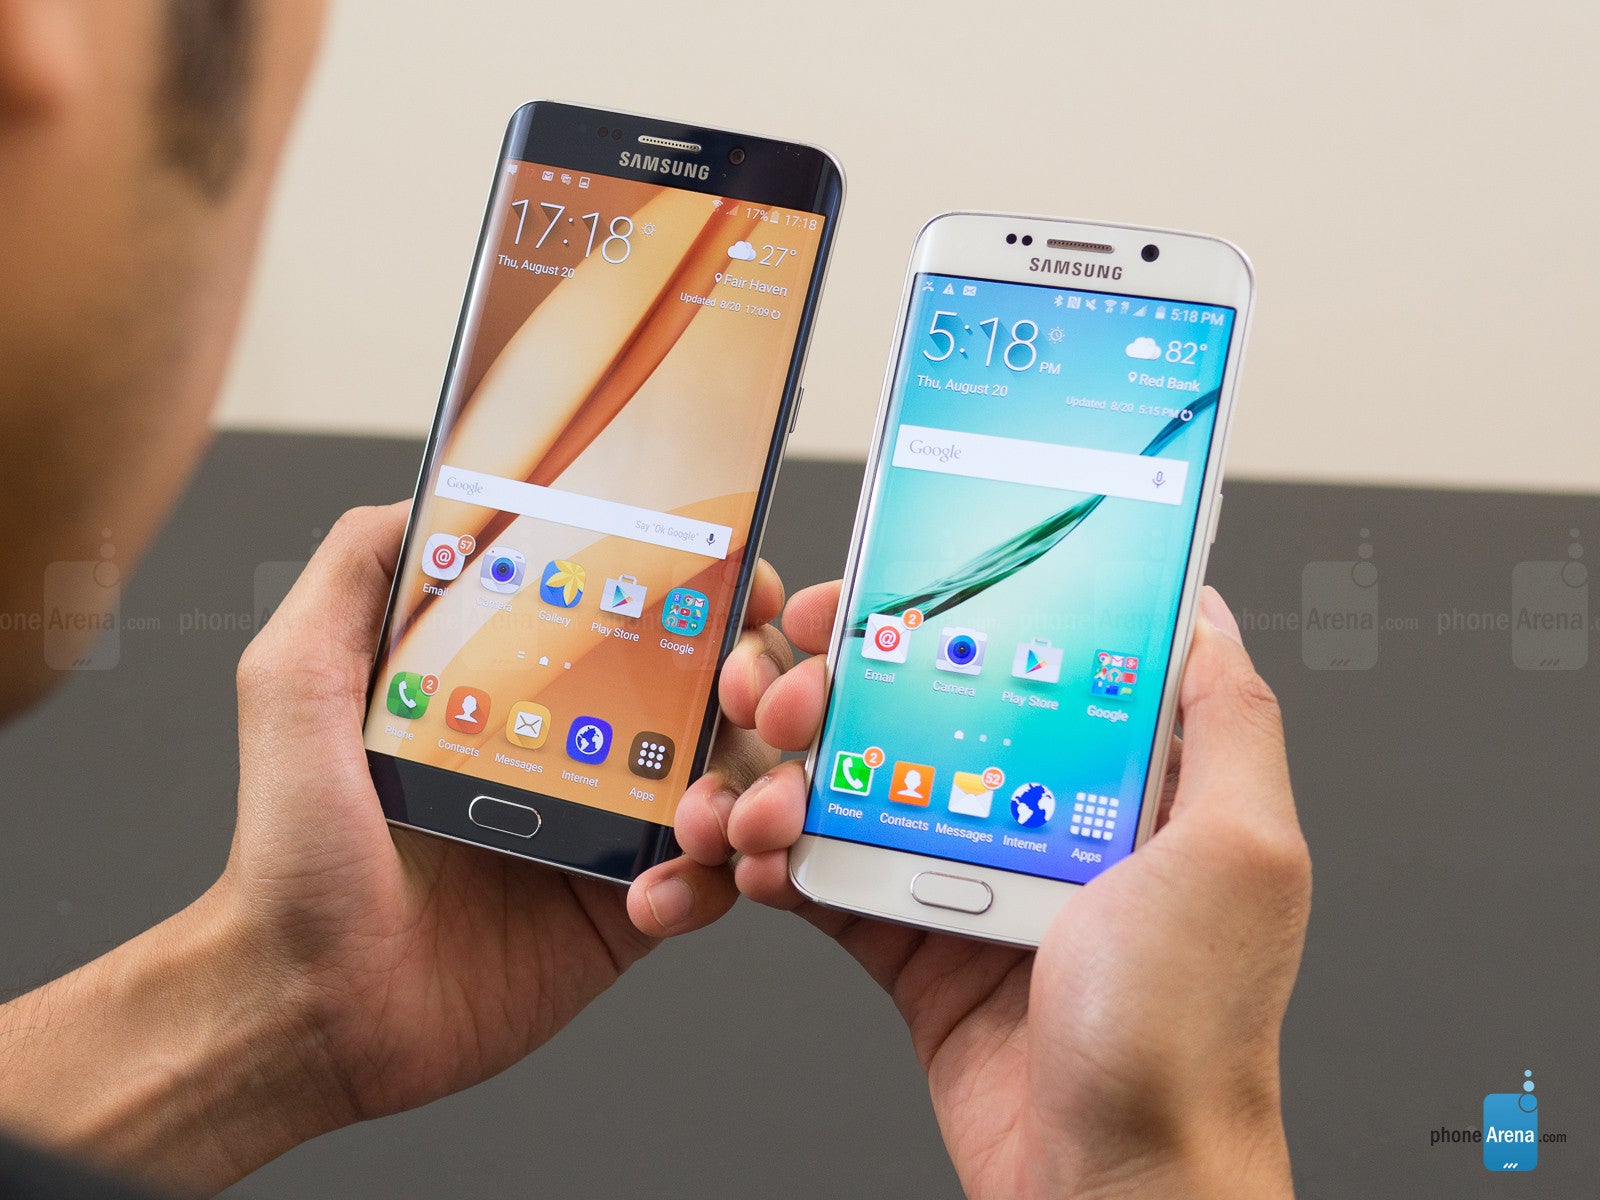 Samsung Galaxy S6 edge+ vs Samsung Galaxy S6 edge.